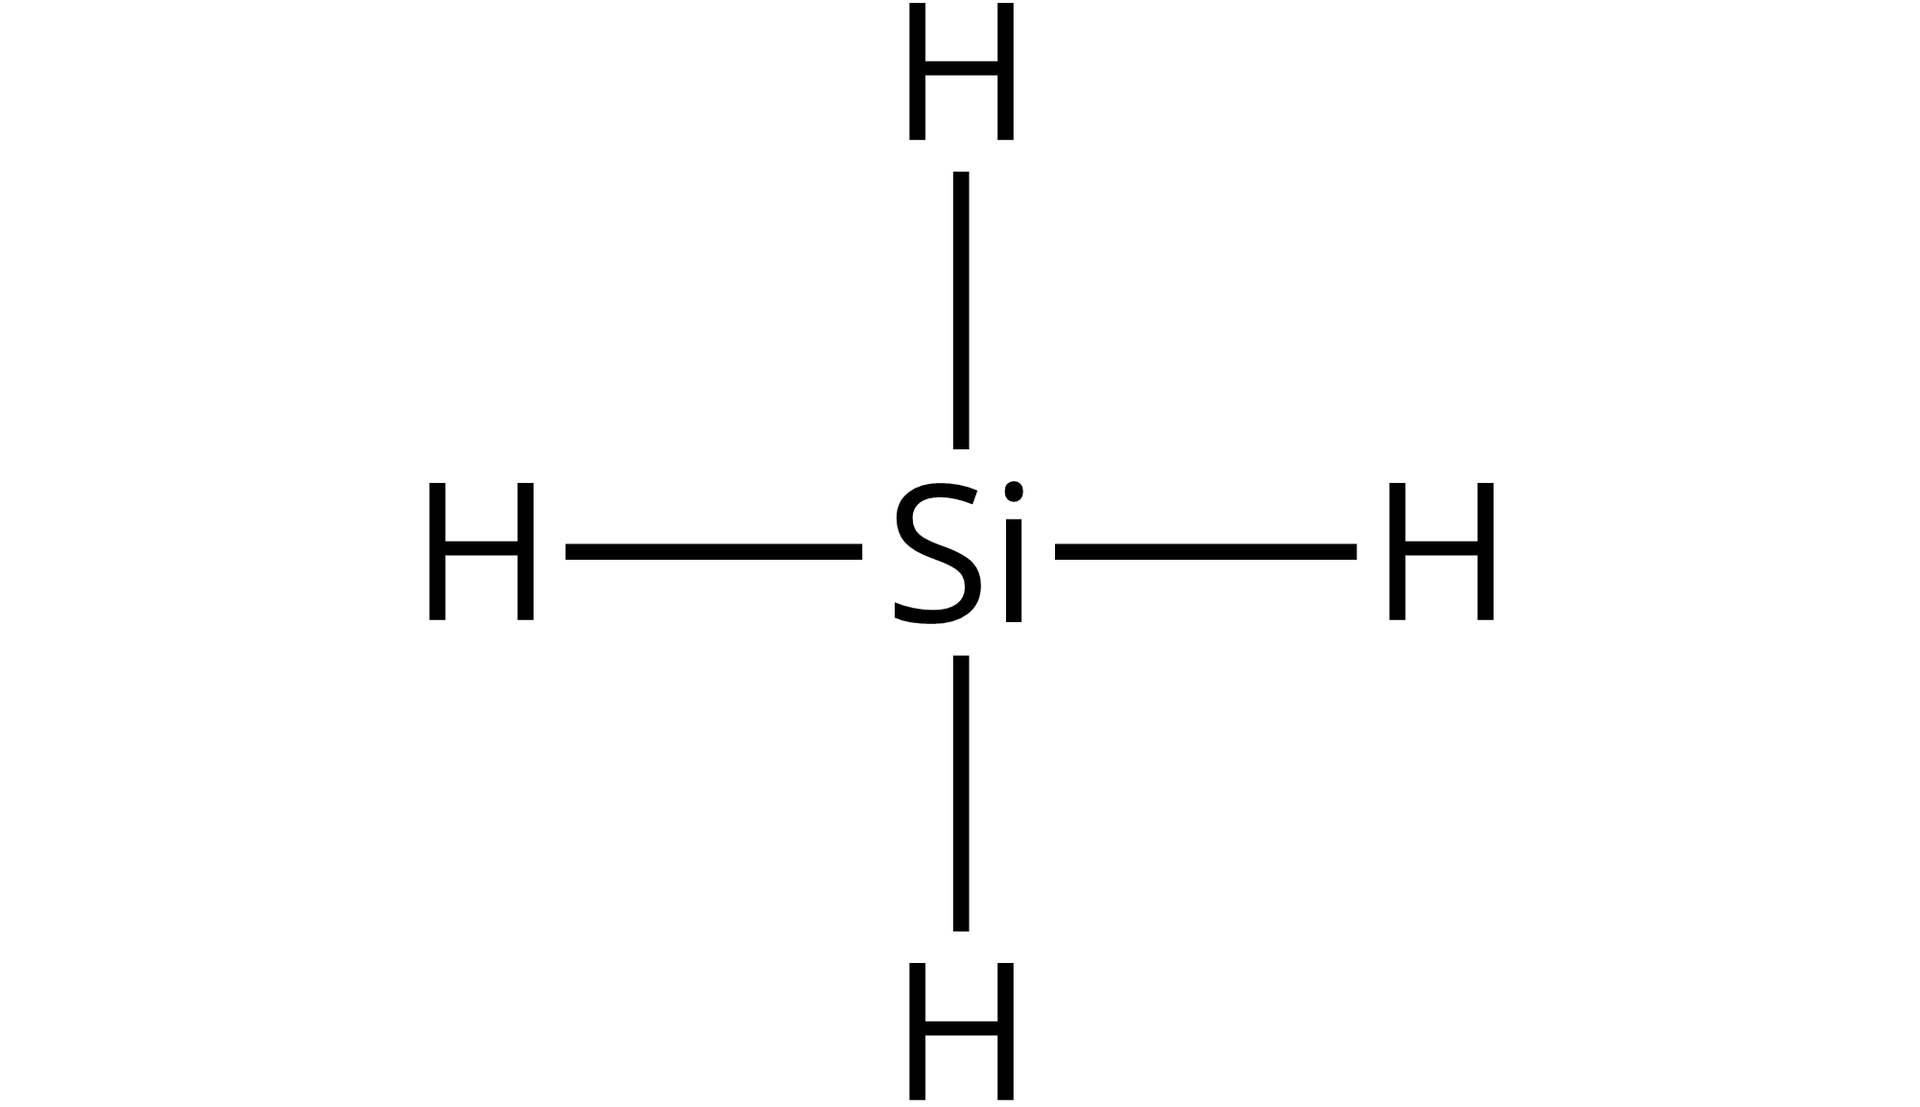 Ilustracja przedstawiająca wzór strukturalny wodorku krzemu SiH4. Zbudowany z atomu krzemu Si połączonego za pomocą wiązań pojedynczych z czterema atomami wodoru. Od symbolu Si poprowadzone są cztery kreski symbolizujące wiązania, na których końcach dopisane są symbole wodoru H.